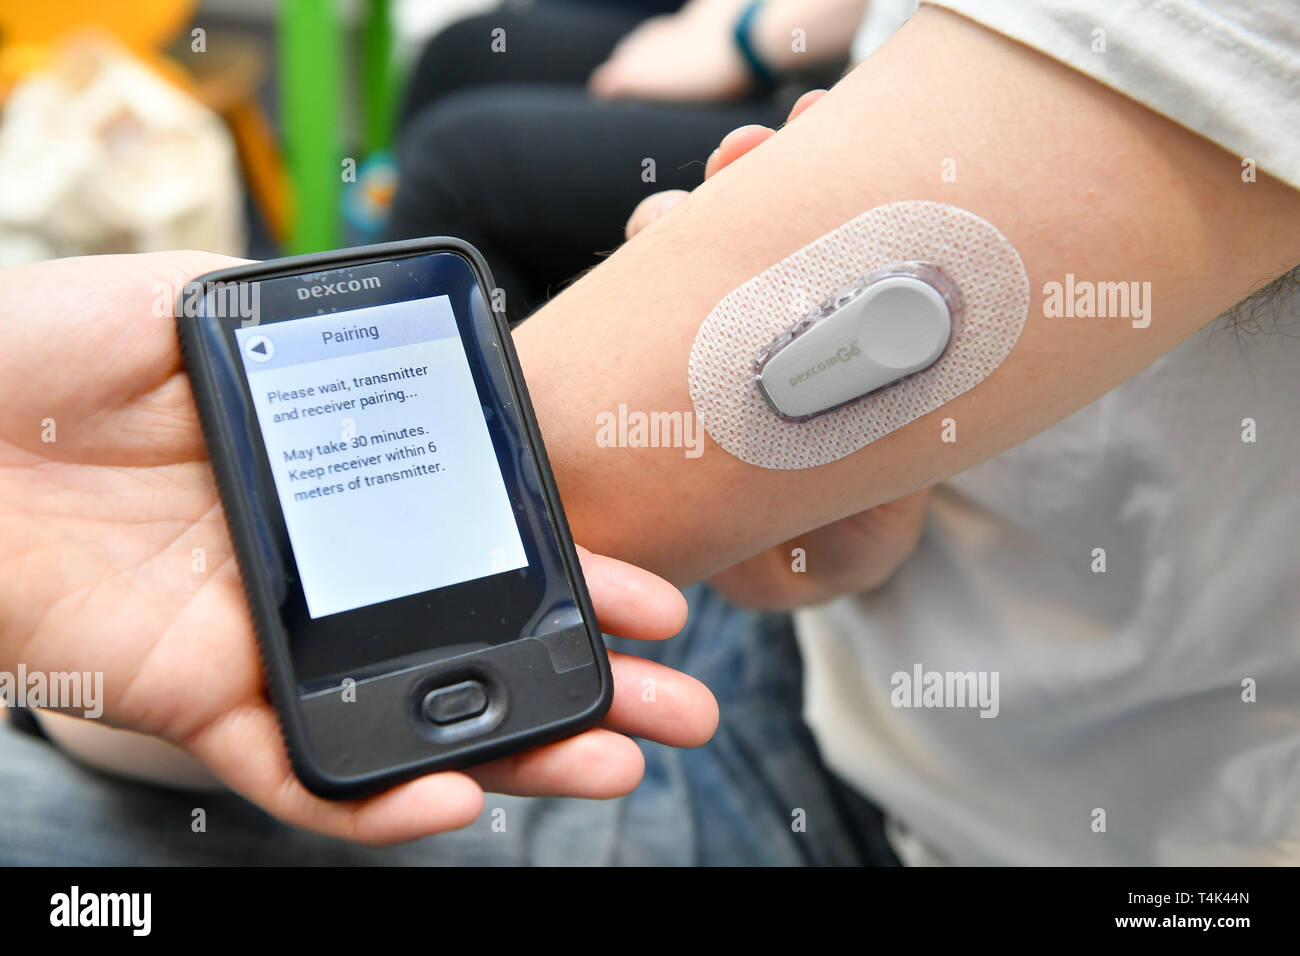 Ein dexcom G6 Continuous Glucose Monitoring (CGM) ist an den Arm eines  Patienten in einem Medizinischen Klinik fest, die an der Universität von  Bristol. PRESS ASSOCIATION Foto. Bild Datum: Montag, 8. April